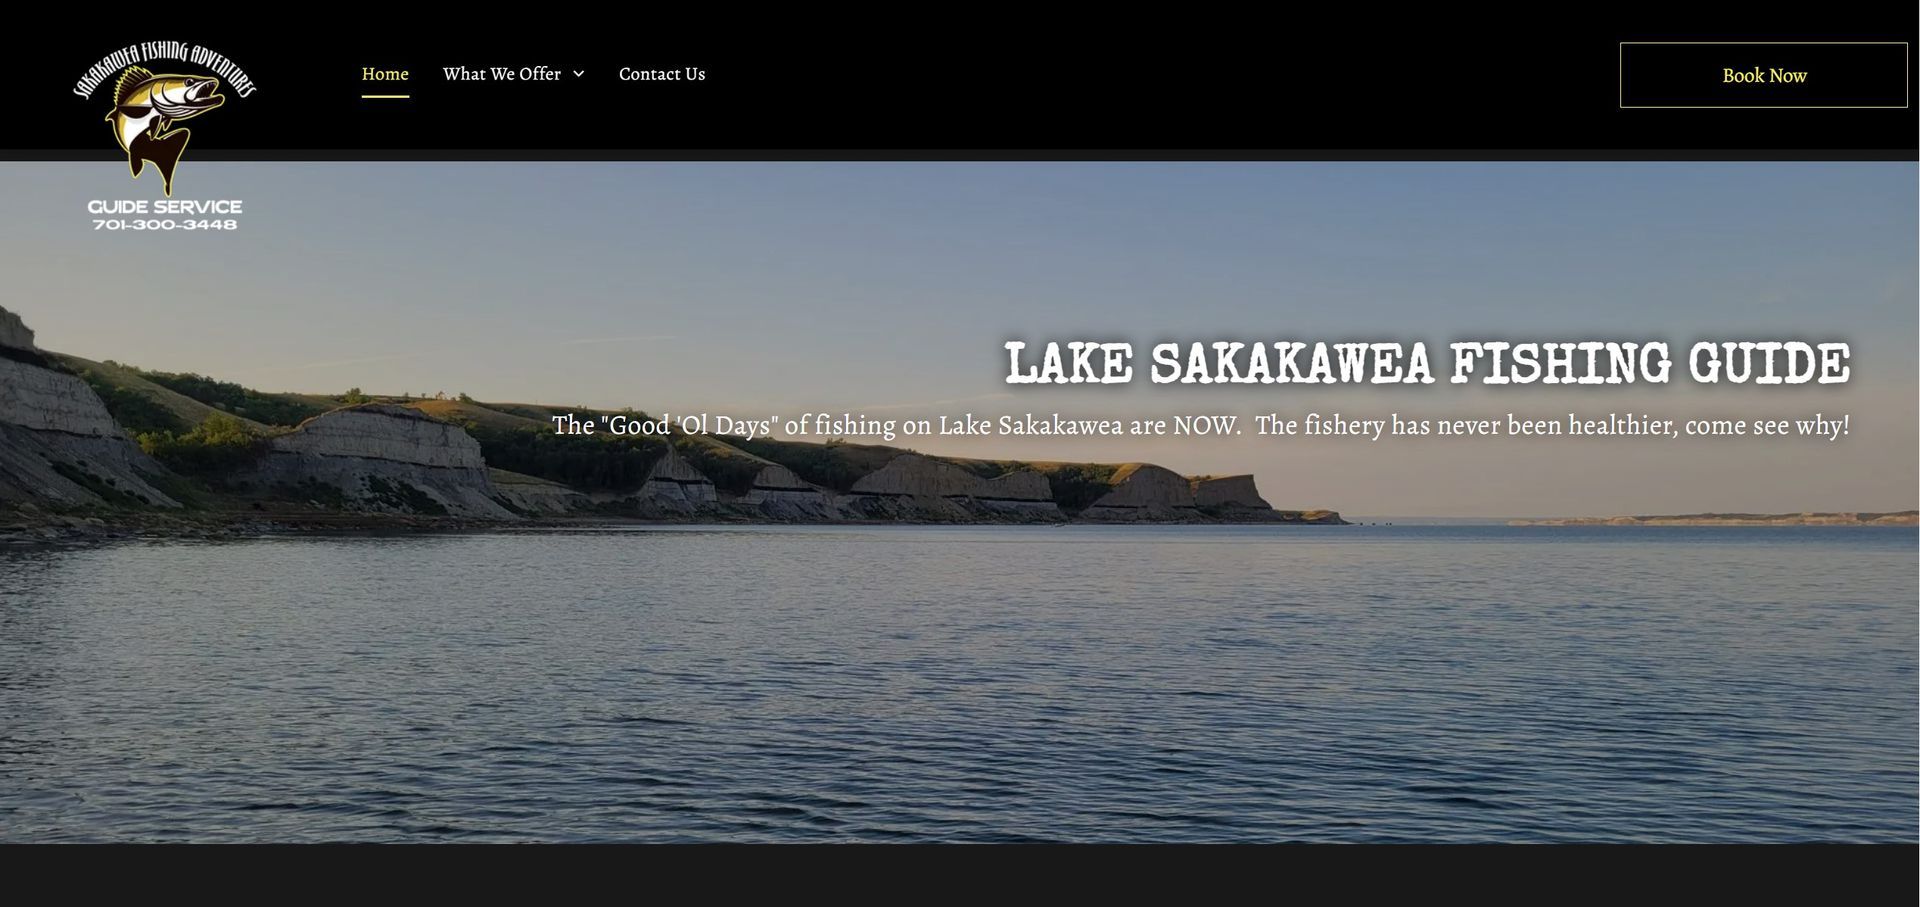 Lake Sakakawea Fishing Guide